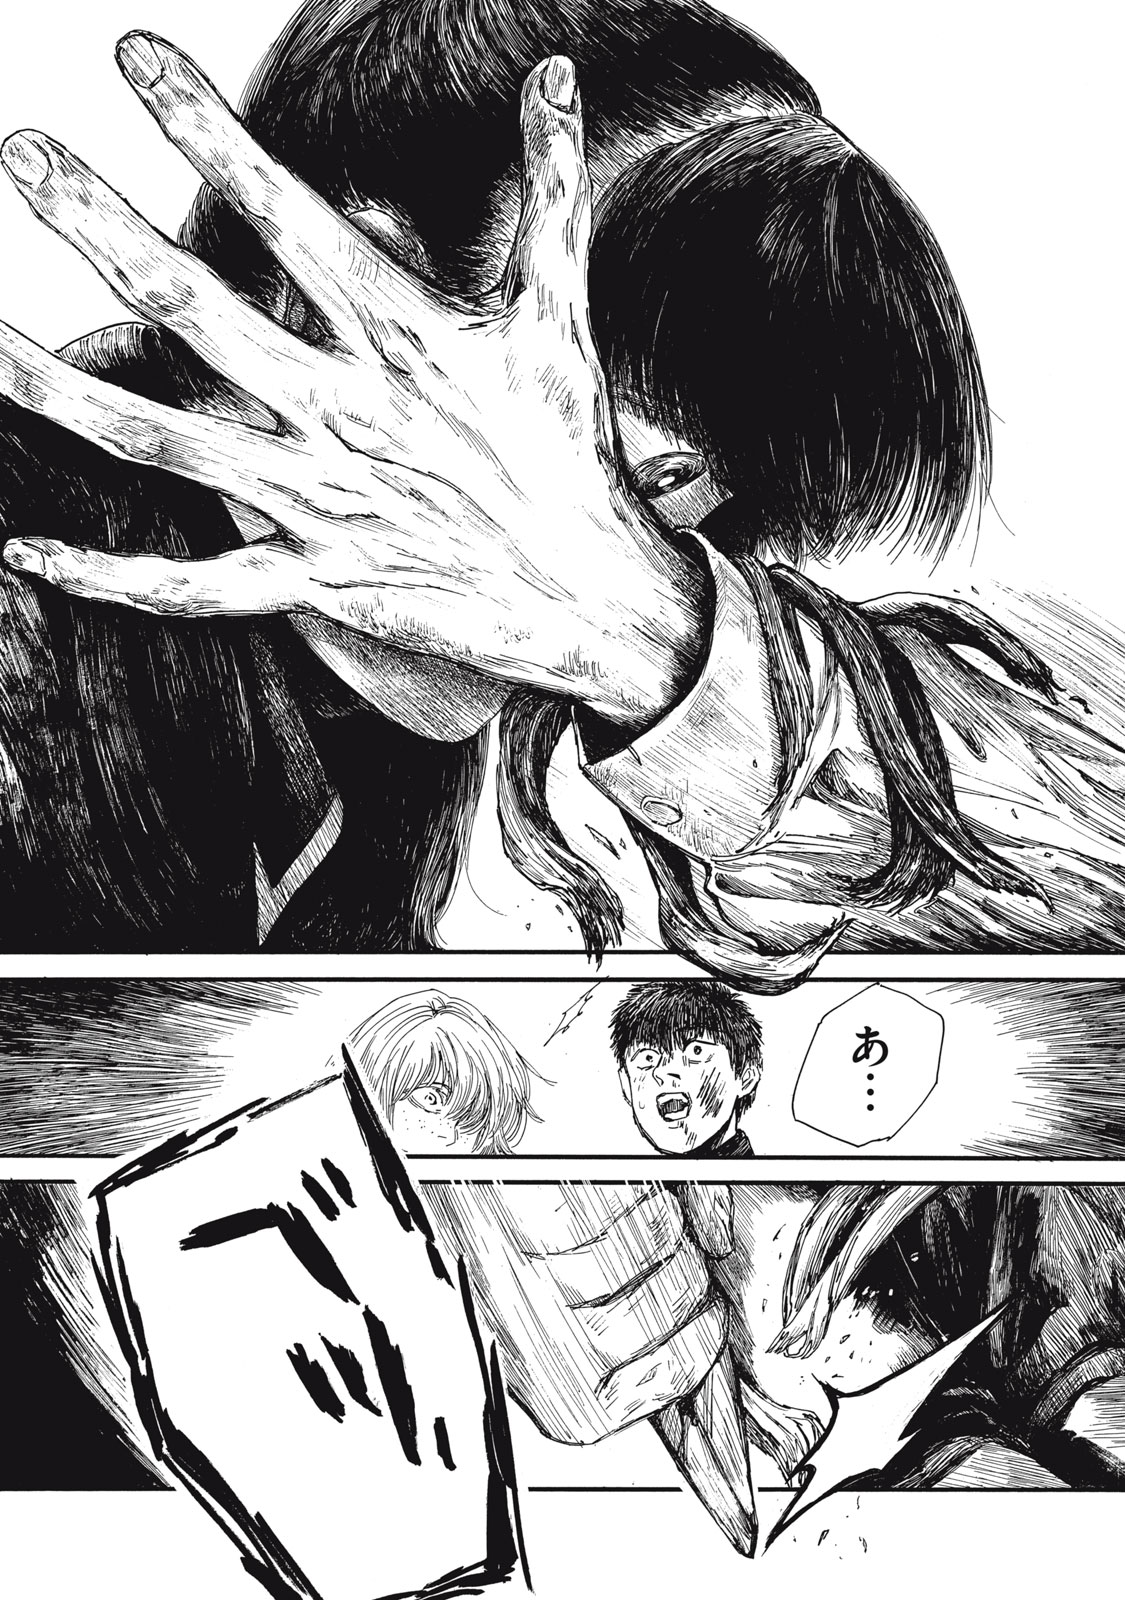 Watashi no Hara no Naka no Bakemono - Chapter 28 - Page 4